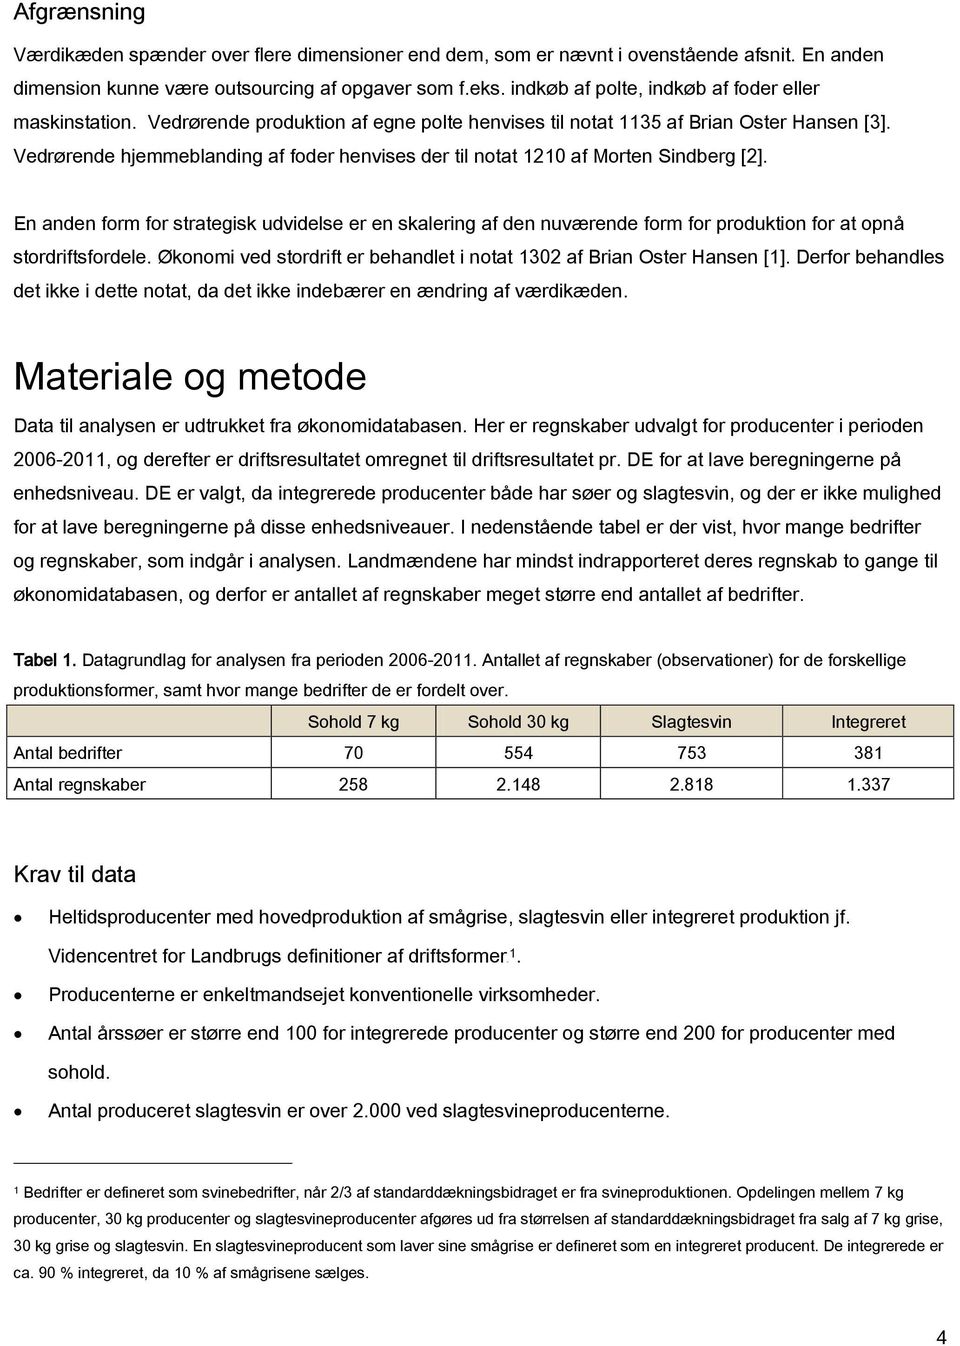 Vedrørende hjemmeblanding af foder henvises der til notat 1210 af Morten Sindberg [2].